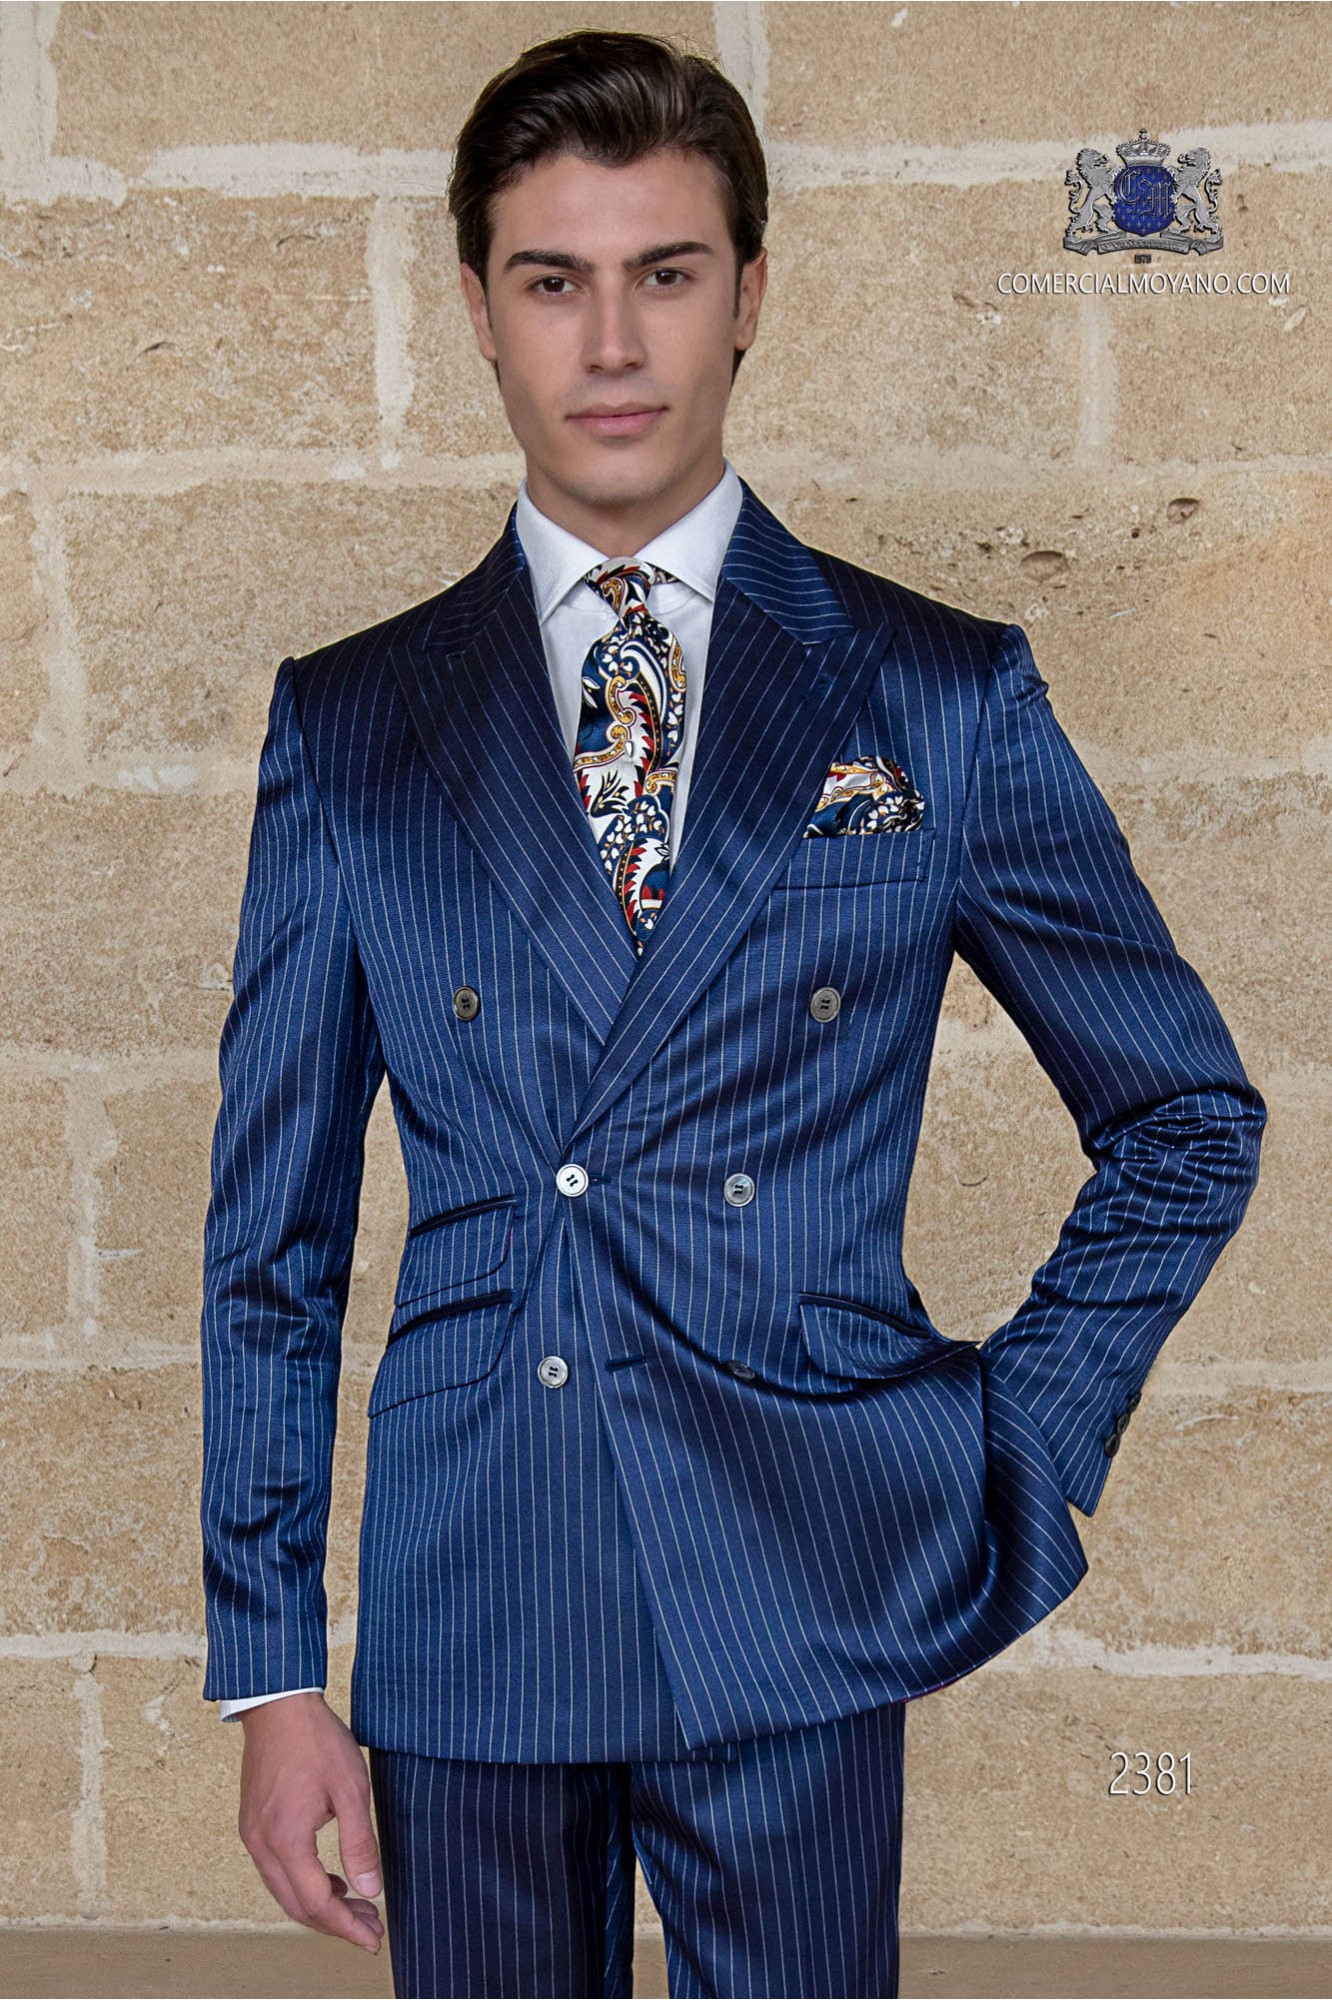 Traje cruzado diplomático azul royal modelo: 2381 Mario Moyano colección Gentleman